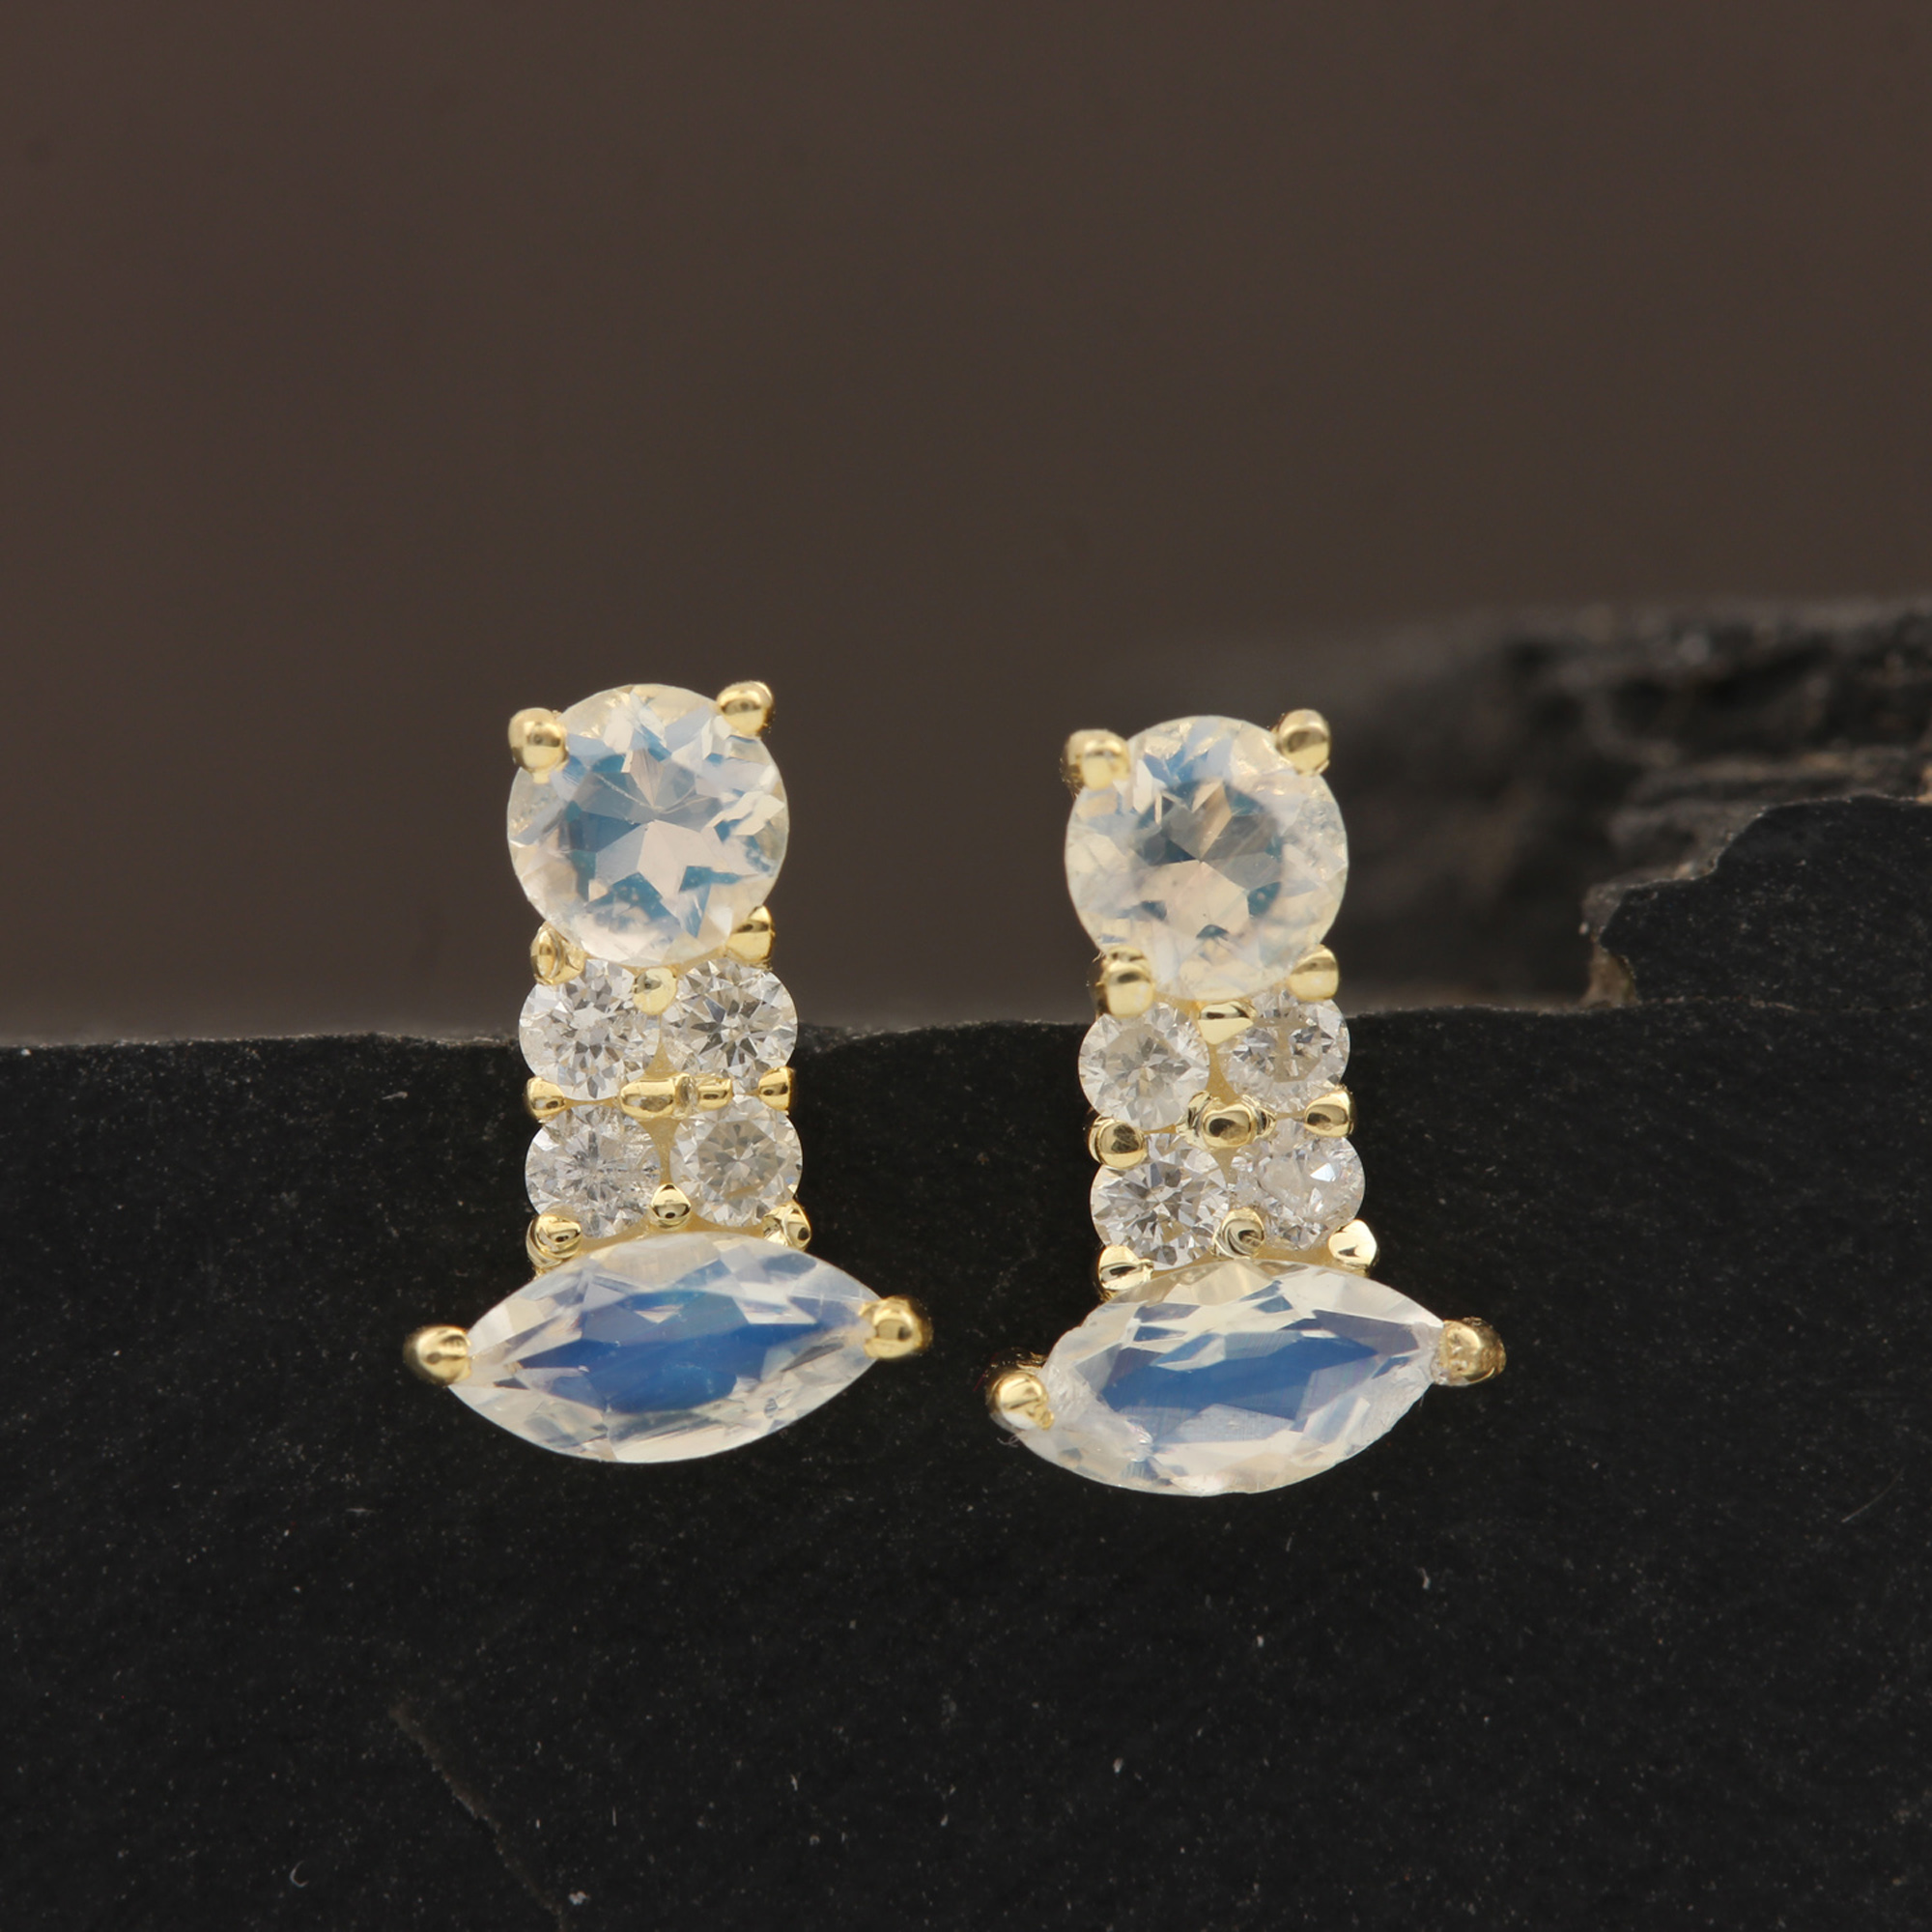 Minimalist Stud Earrings Set in 14k Solid Gold Diamond Natural Rainbow Moonstone